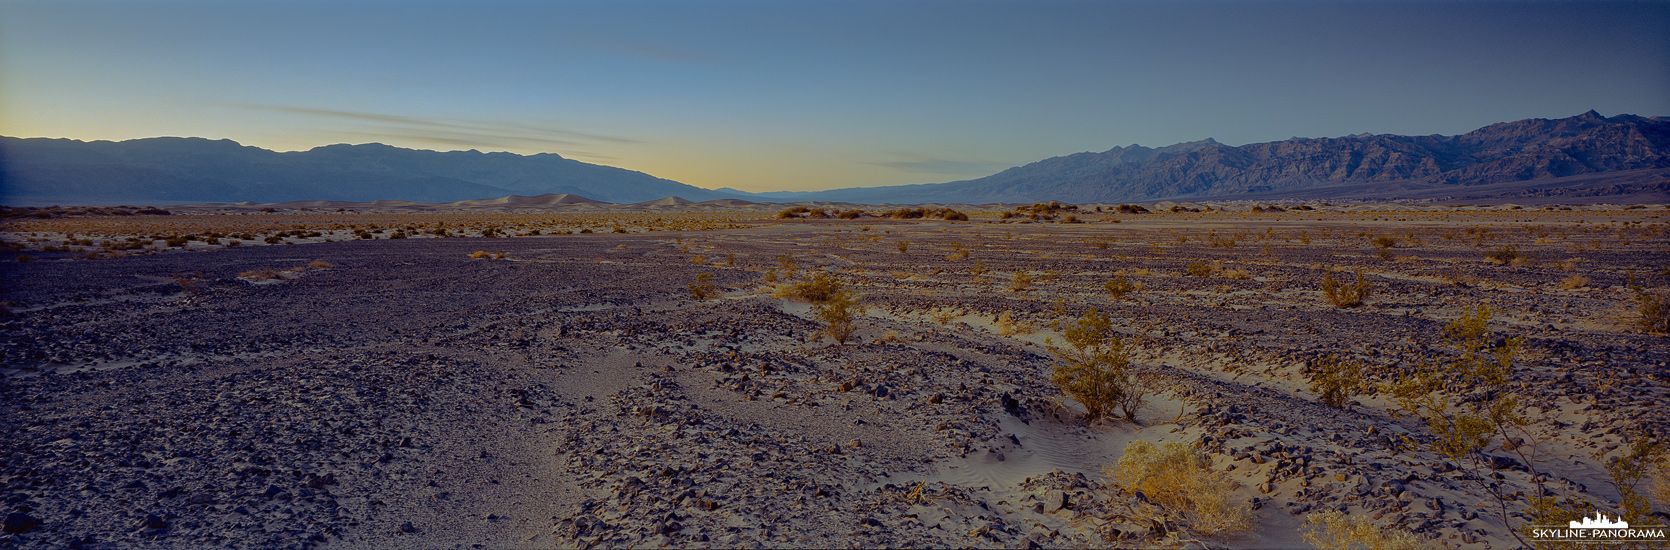 USA Panorama in 6x17 - Zum Sonnenuntergang im Death Valley mit einem Blick Richtung Mesquite Flats Sand Dunes.